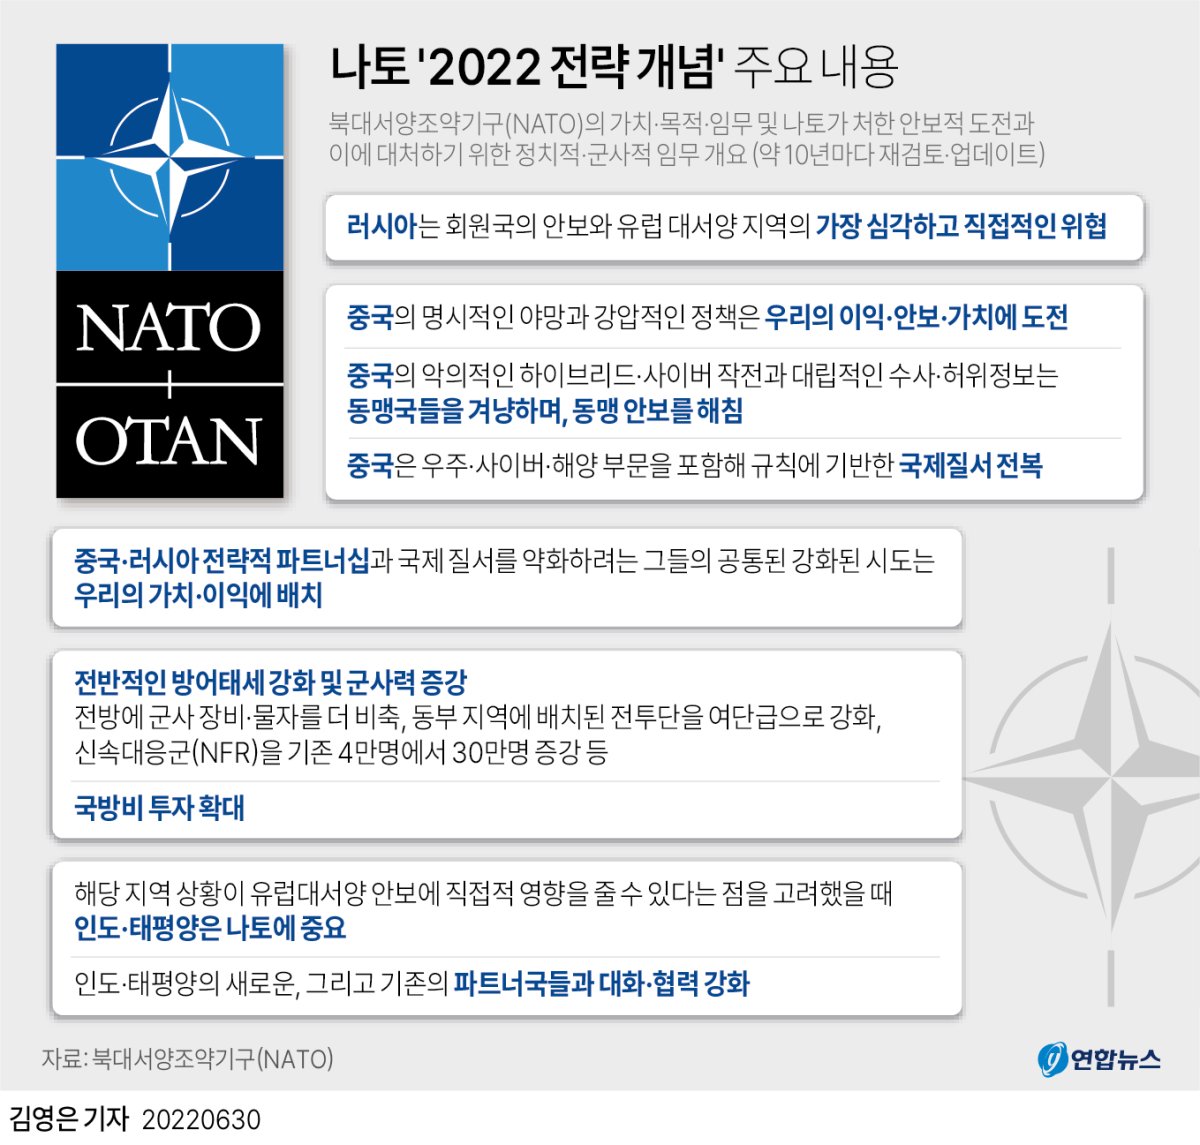 [그래픽] 나토 '2022 전략 개념' 주요 내용